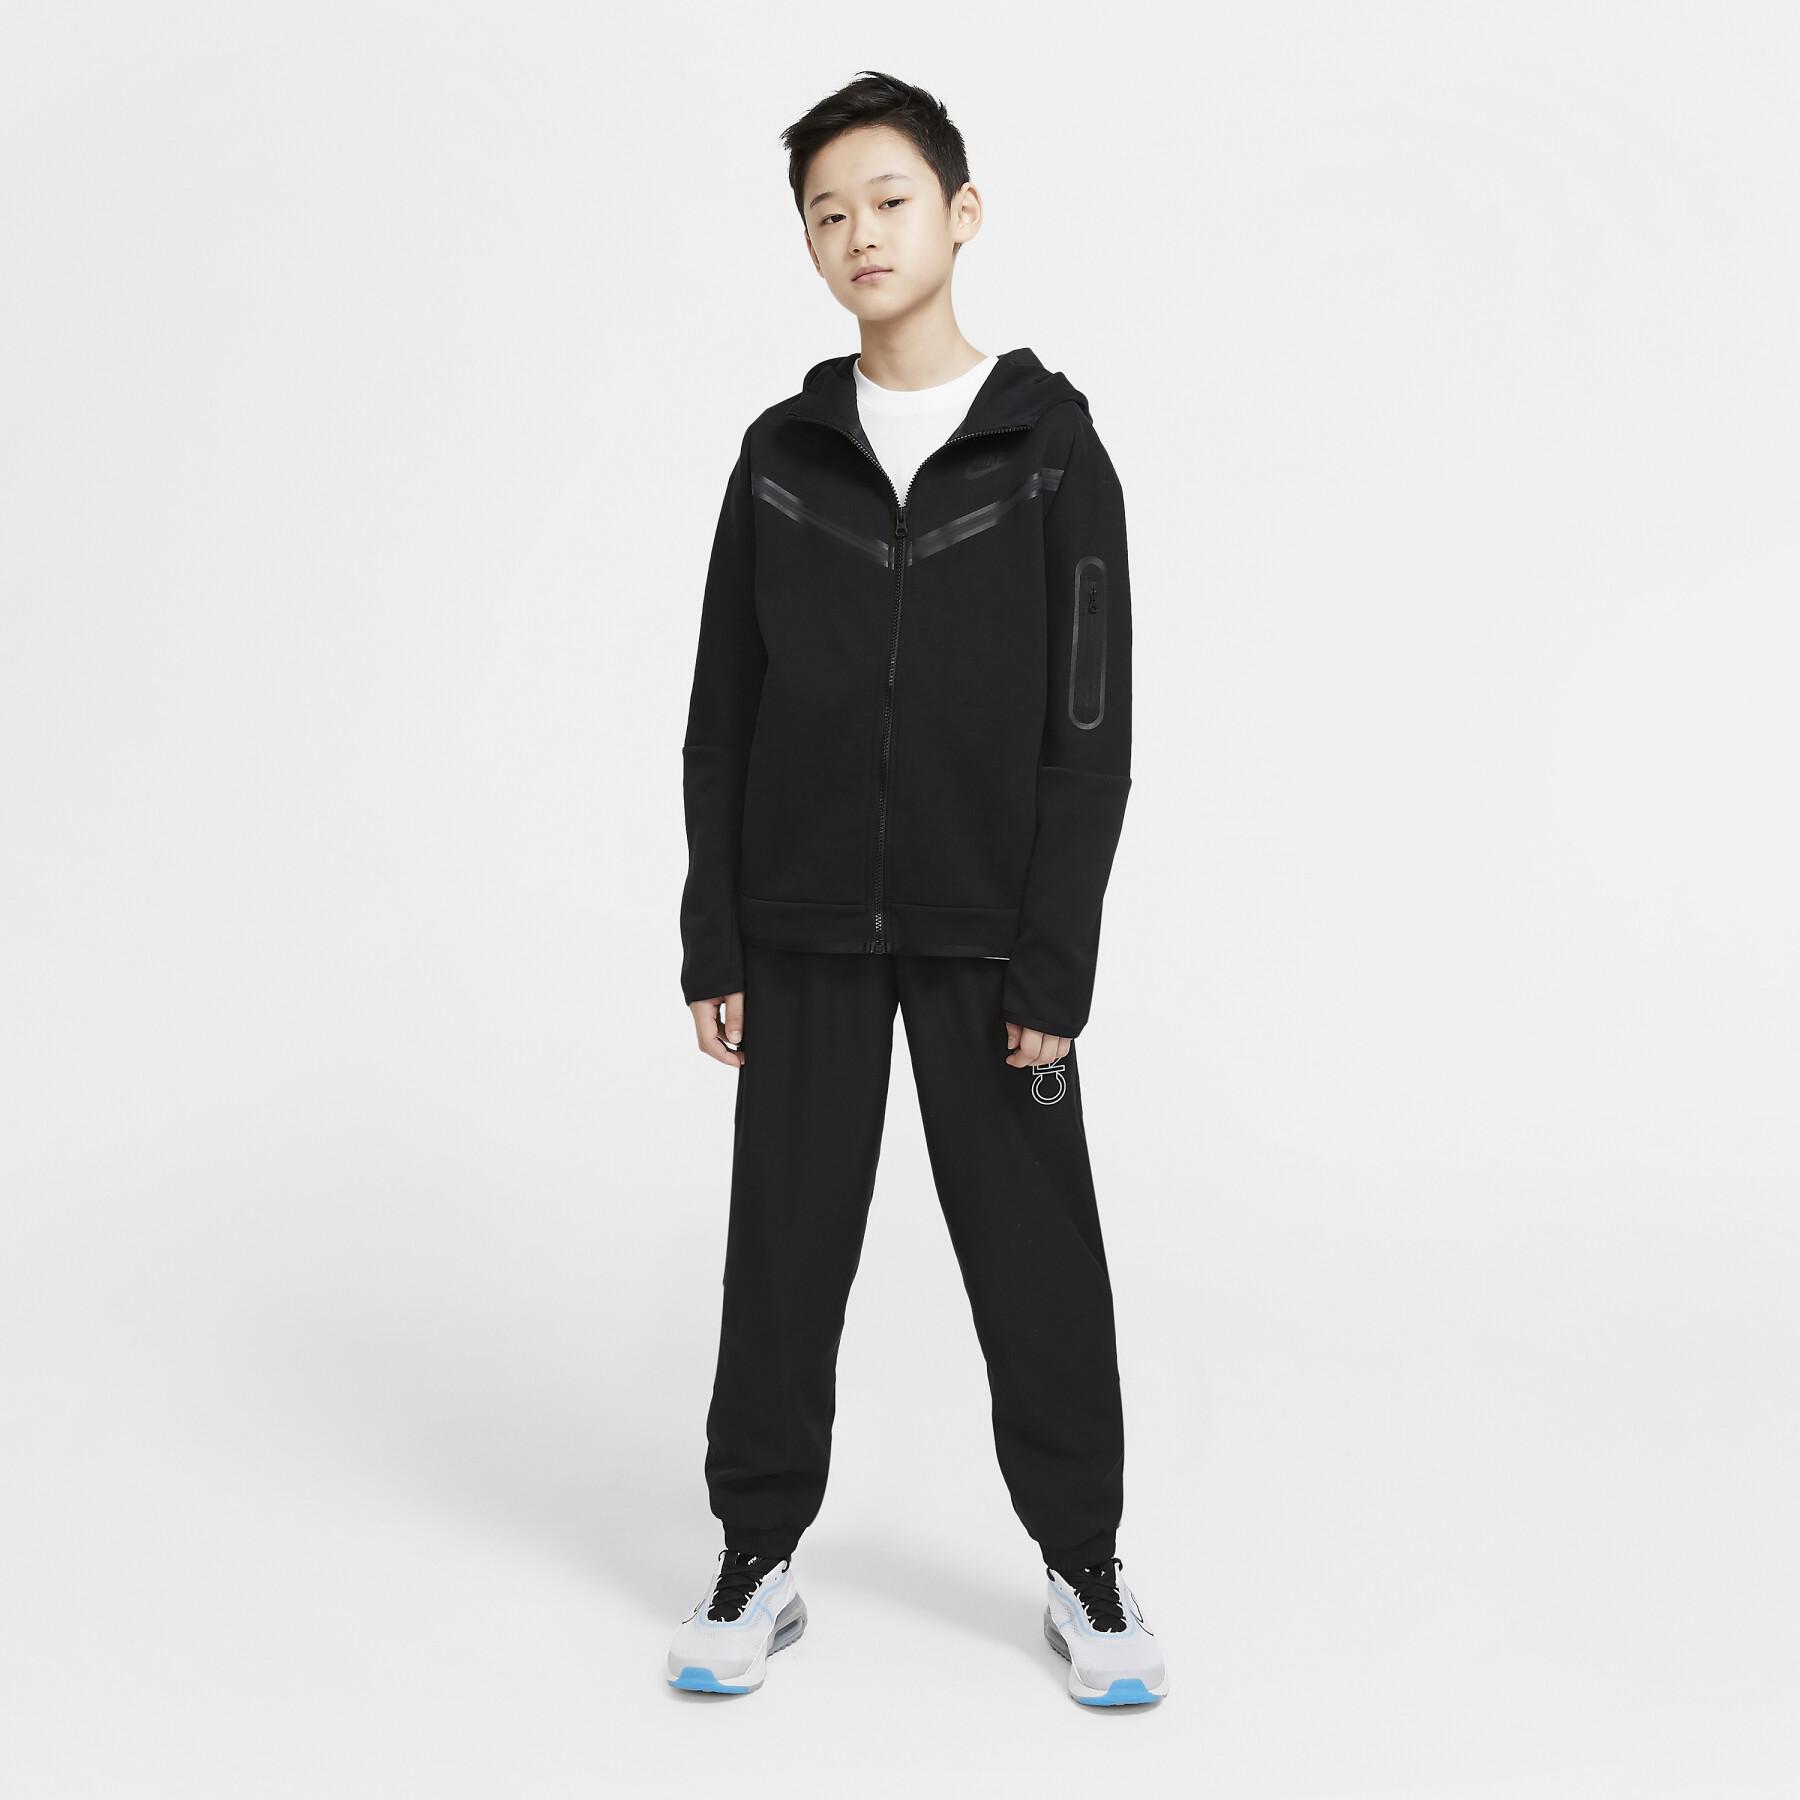 Sweatshirt bambino Nike Tech Fleece